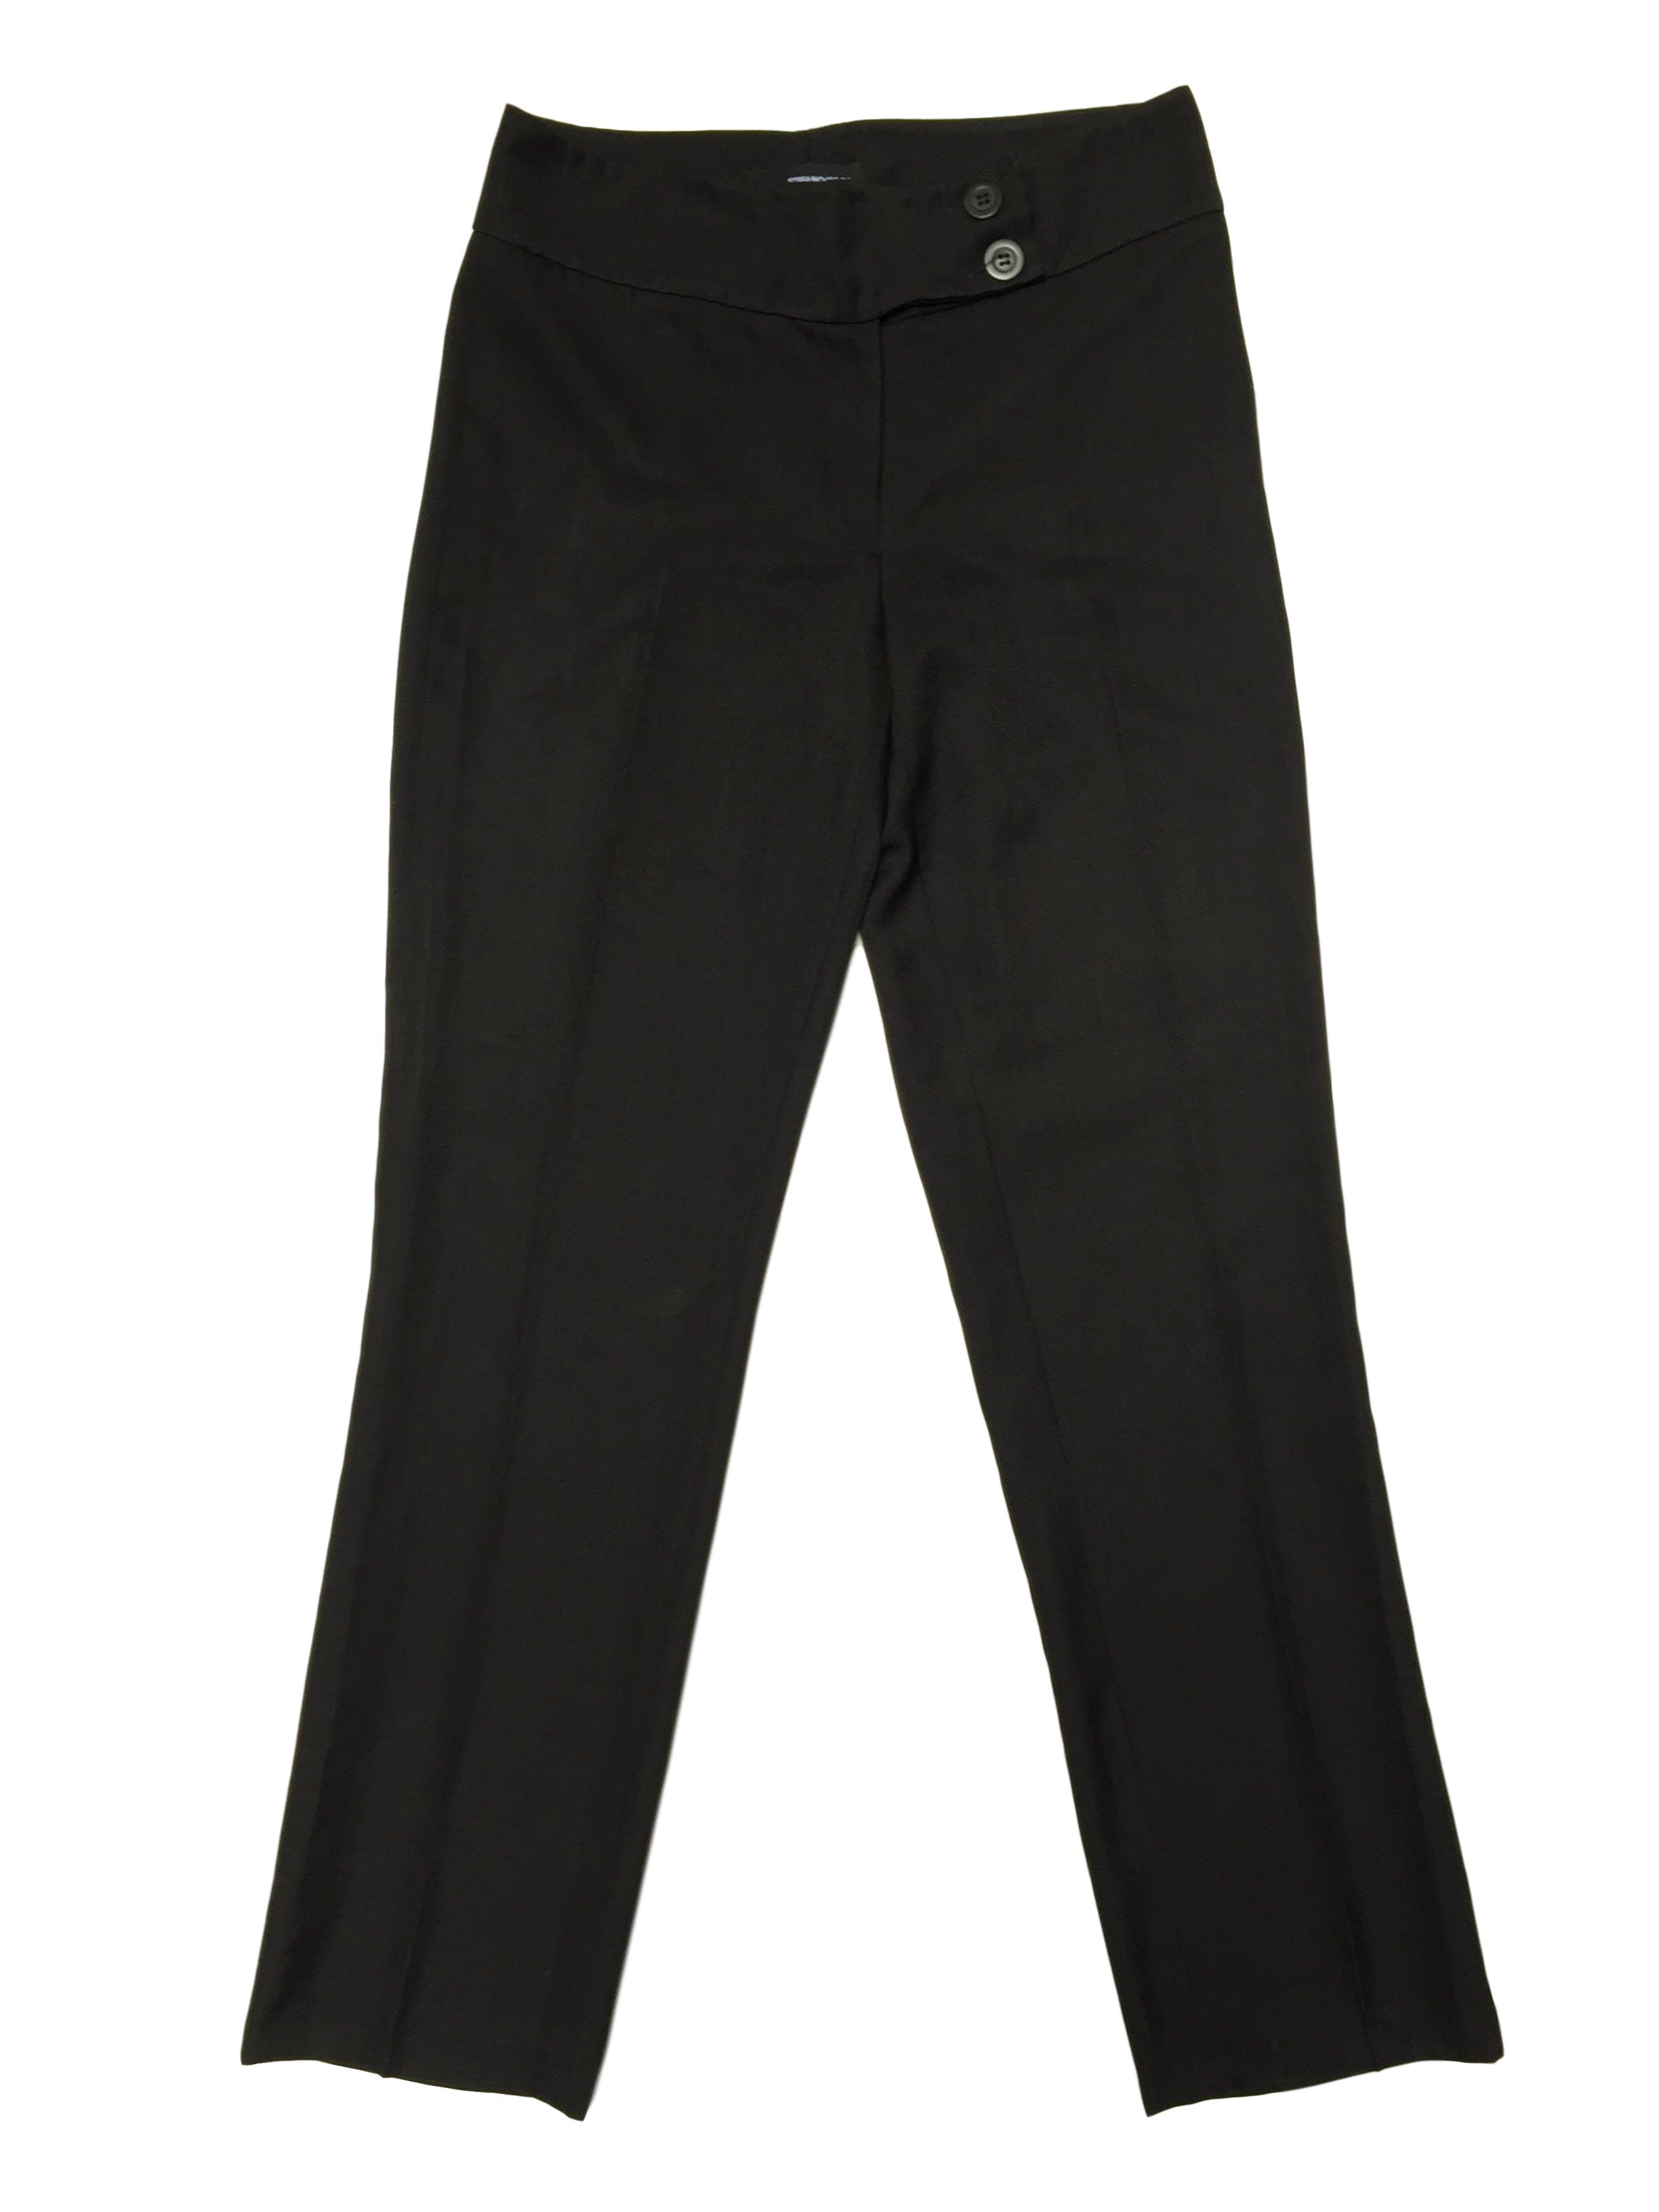 Pantalón gris tipo lanilla a la cintura, forrado, corte recto, con doble botón en la pretina. Cintura 82cm Cadera 106cm